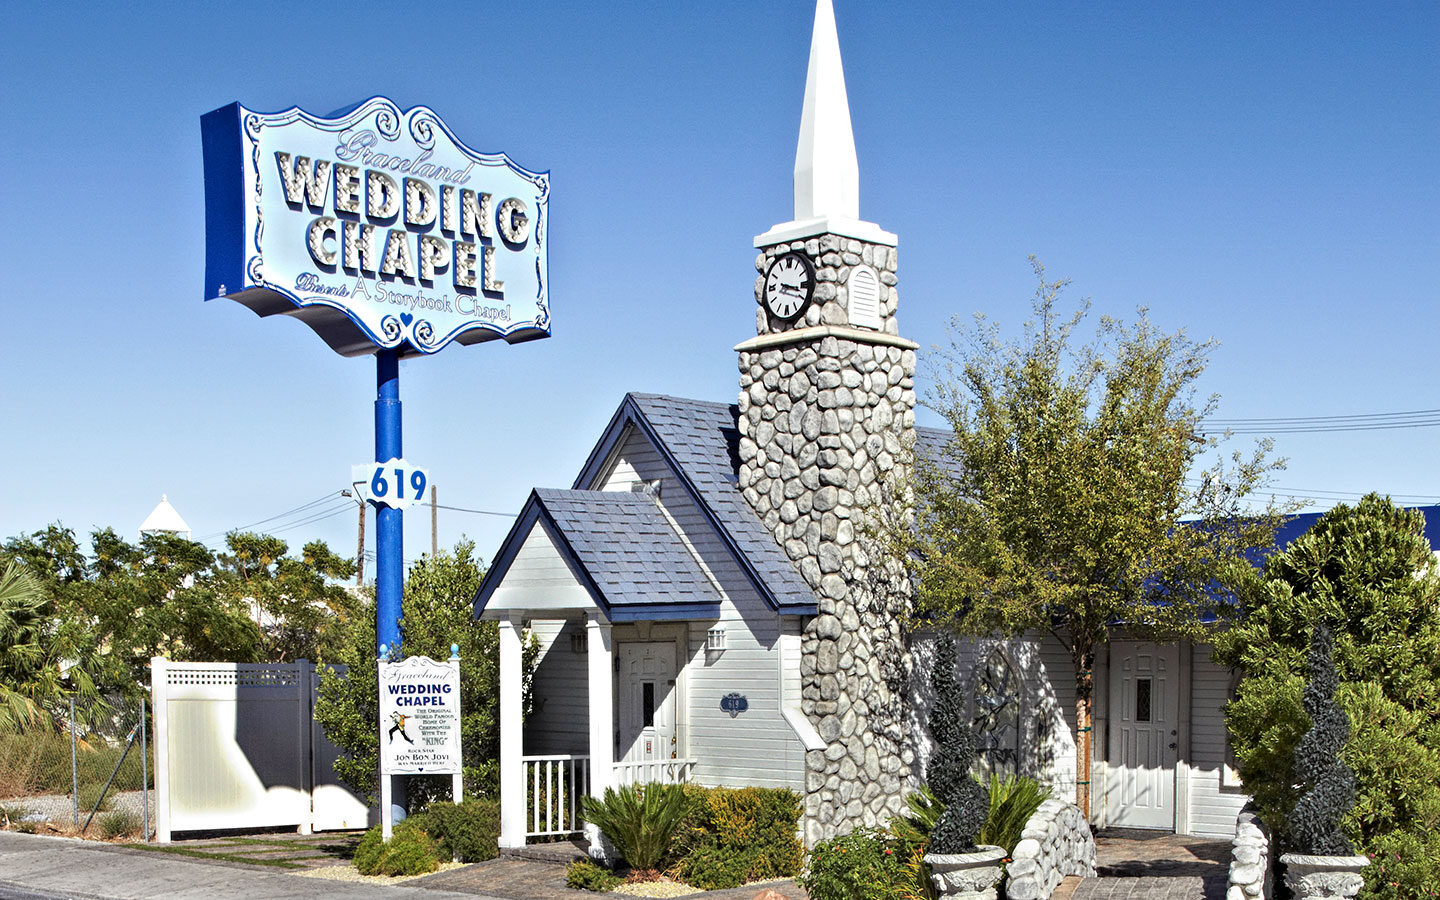 The Graceland Wedding Chapel in Las Vegas